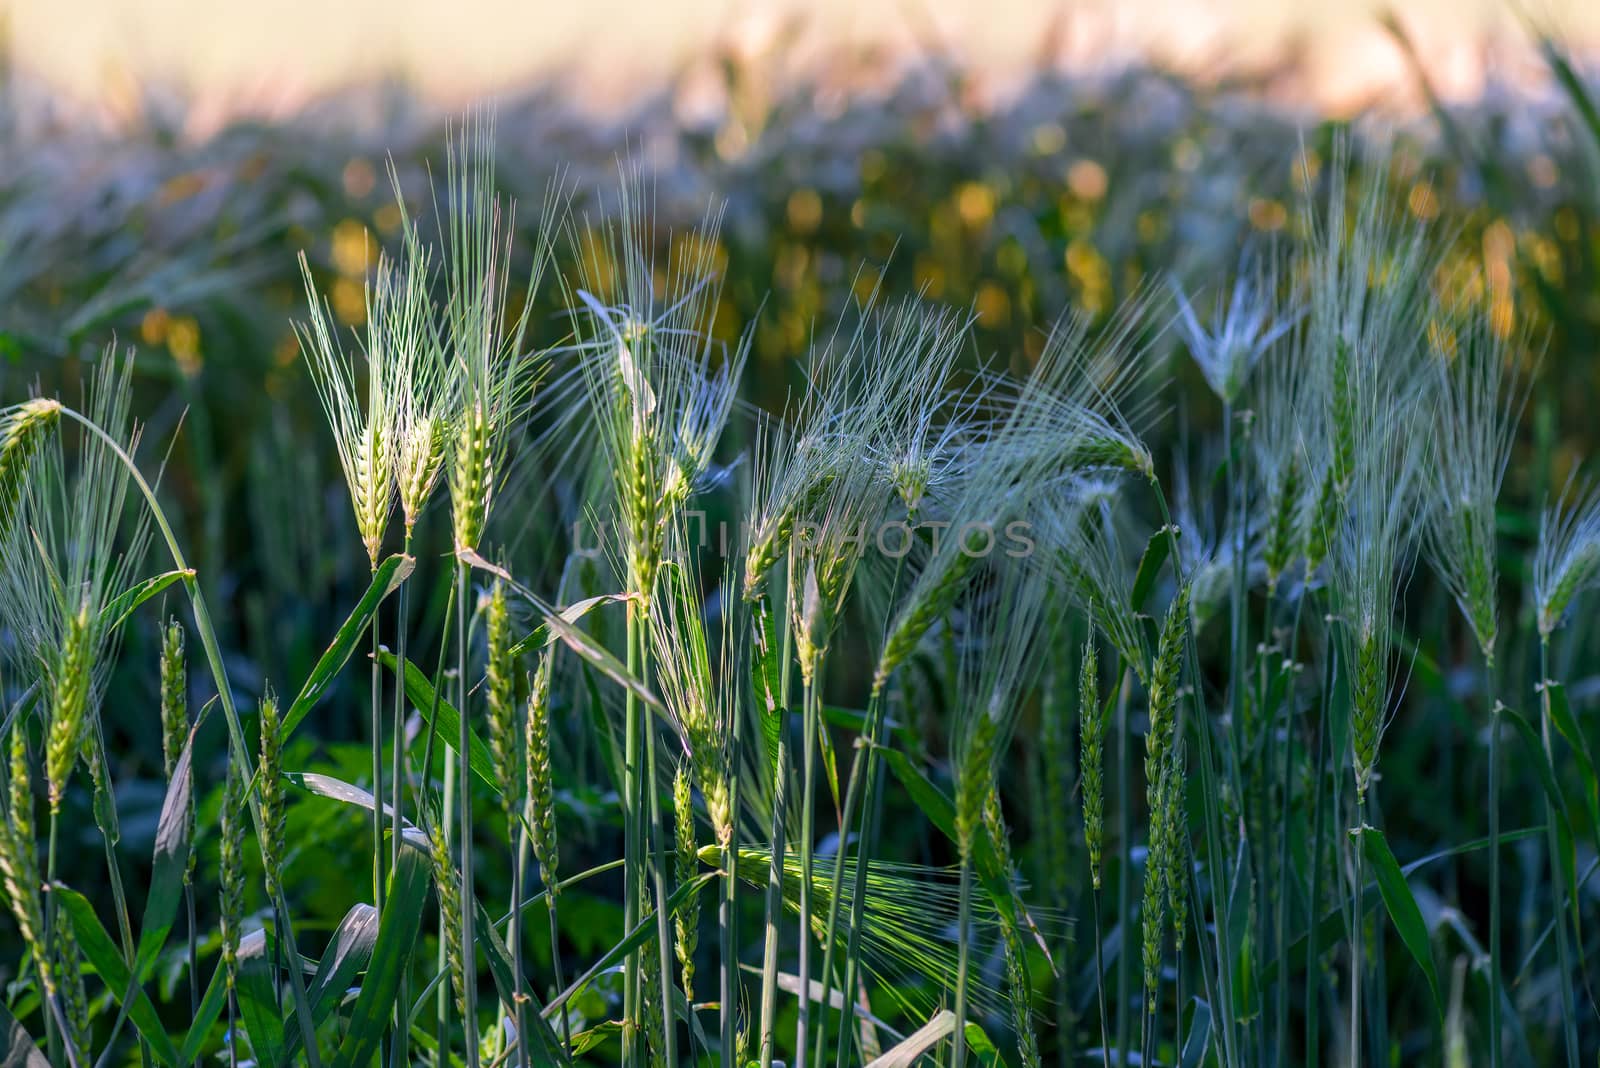 growing ears of juicy wheat in a field